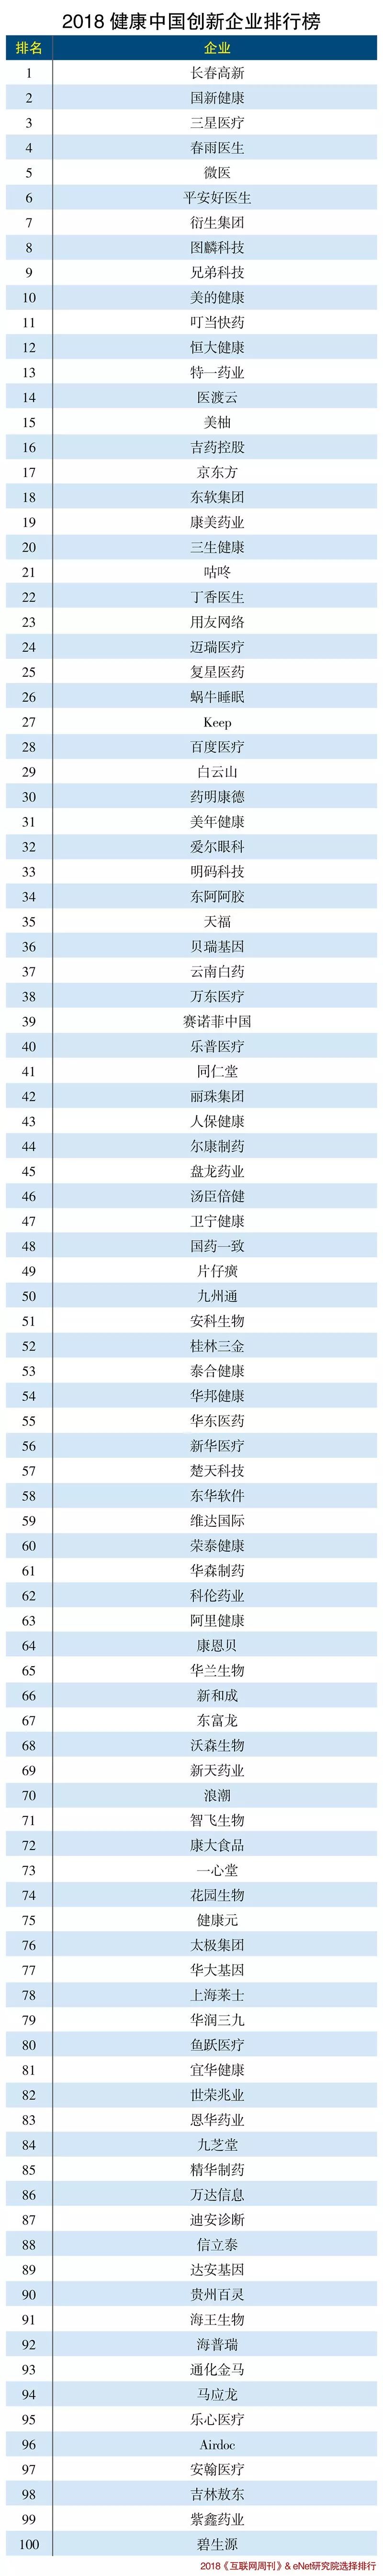 2018年健康中国创业企业排行榜